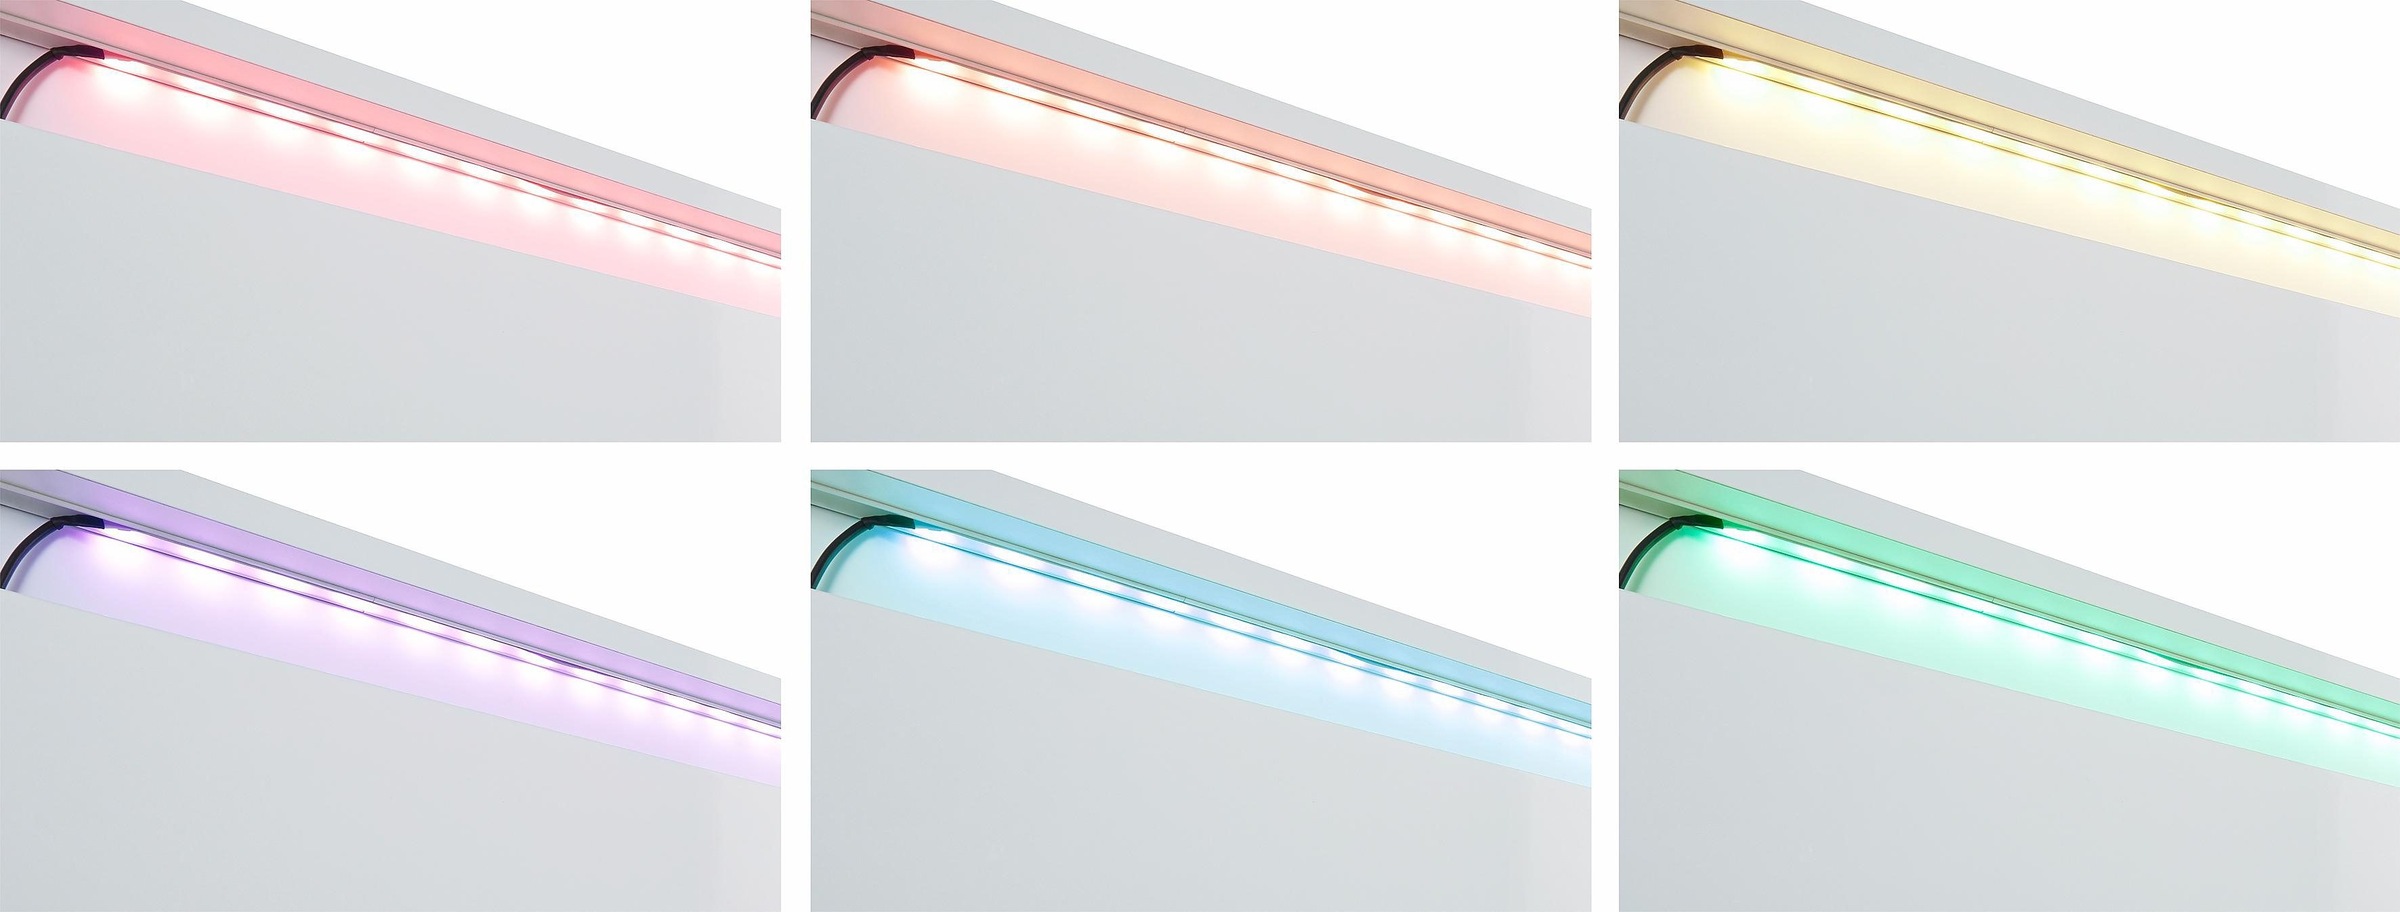 LED Schrankinnenraumbeleuchtung, mit Knopf-Farbsteuerung kaufen bei OTTO online